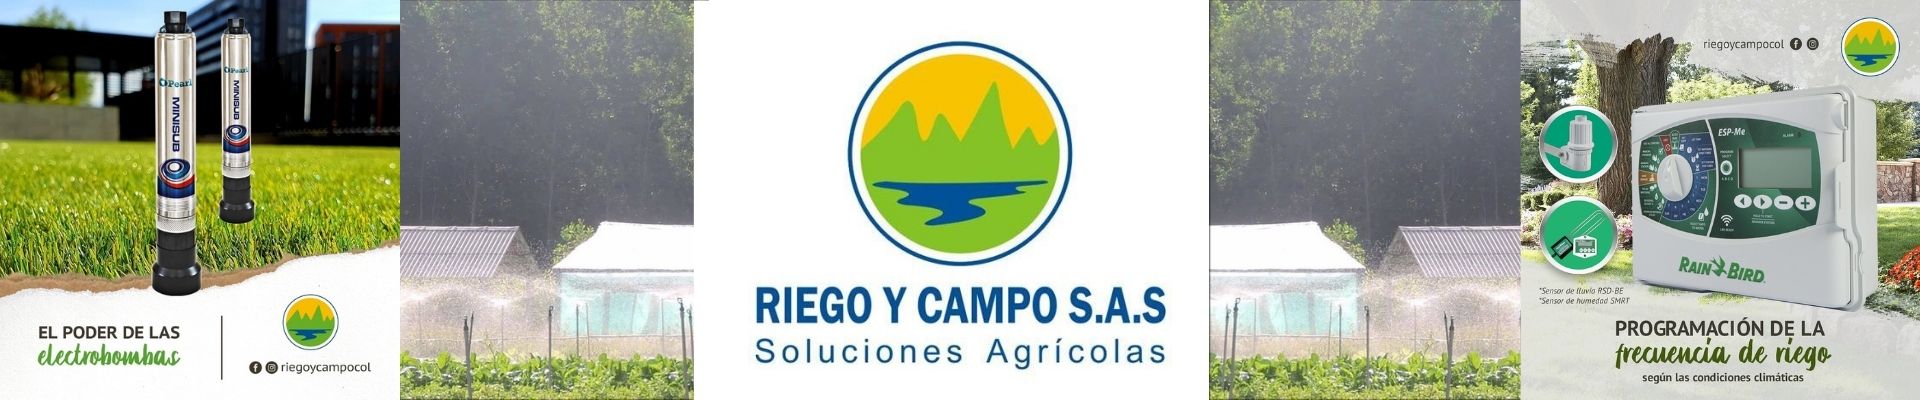 Banner Riego y Campo